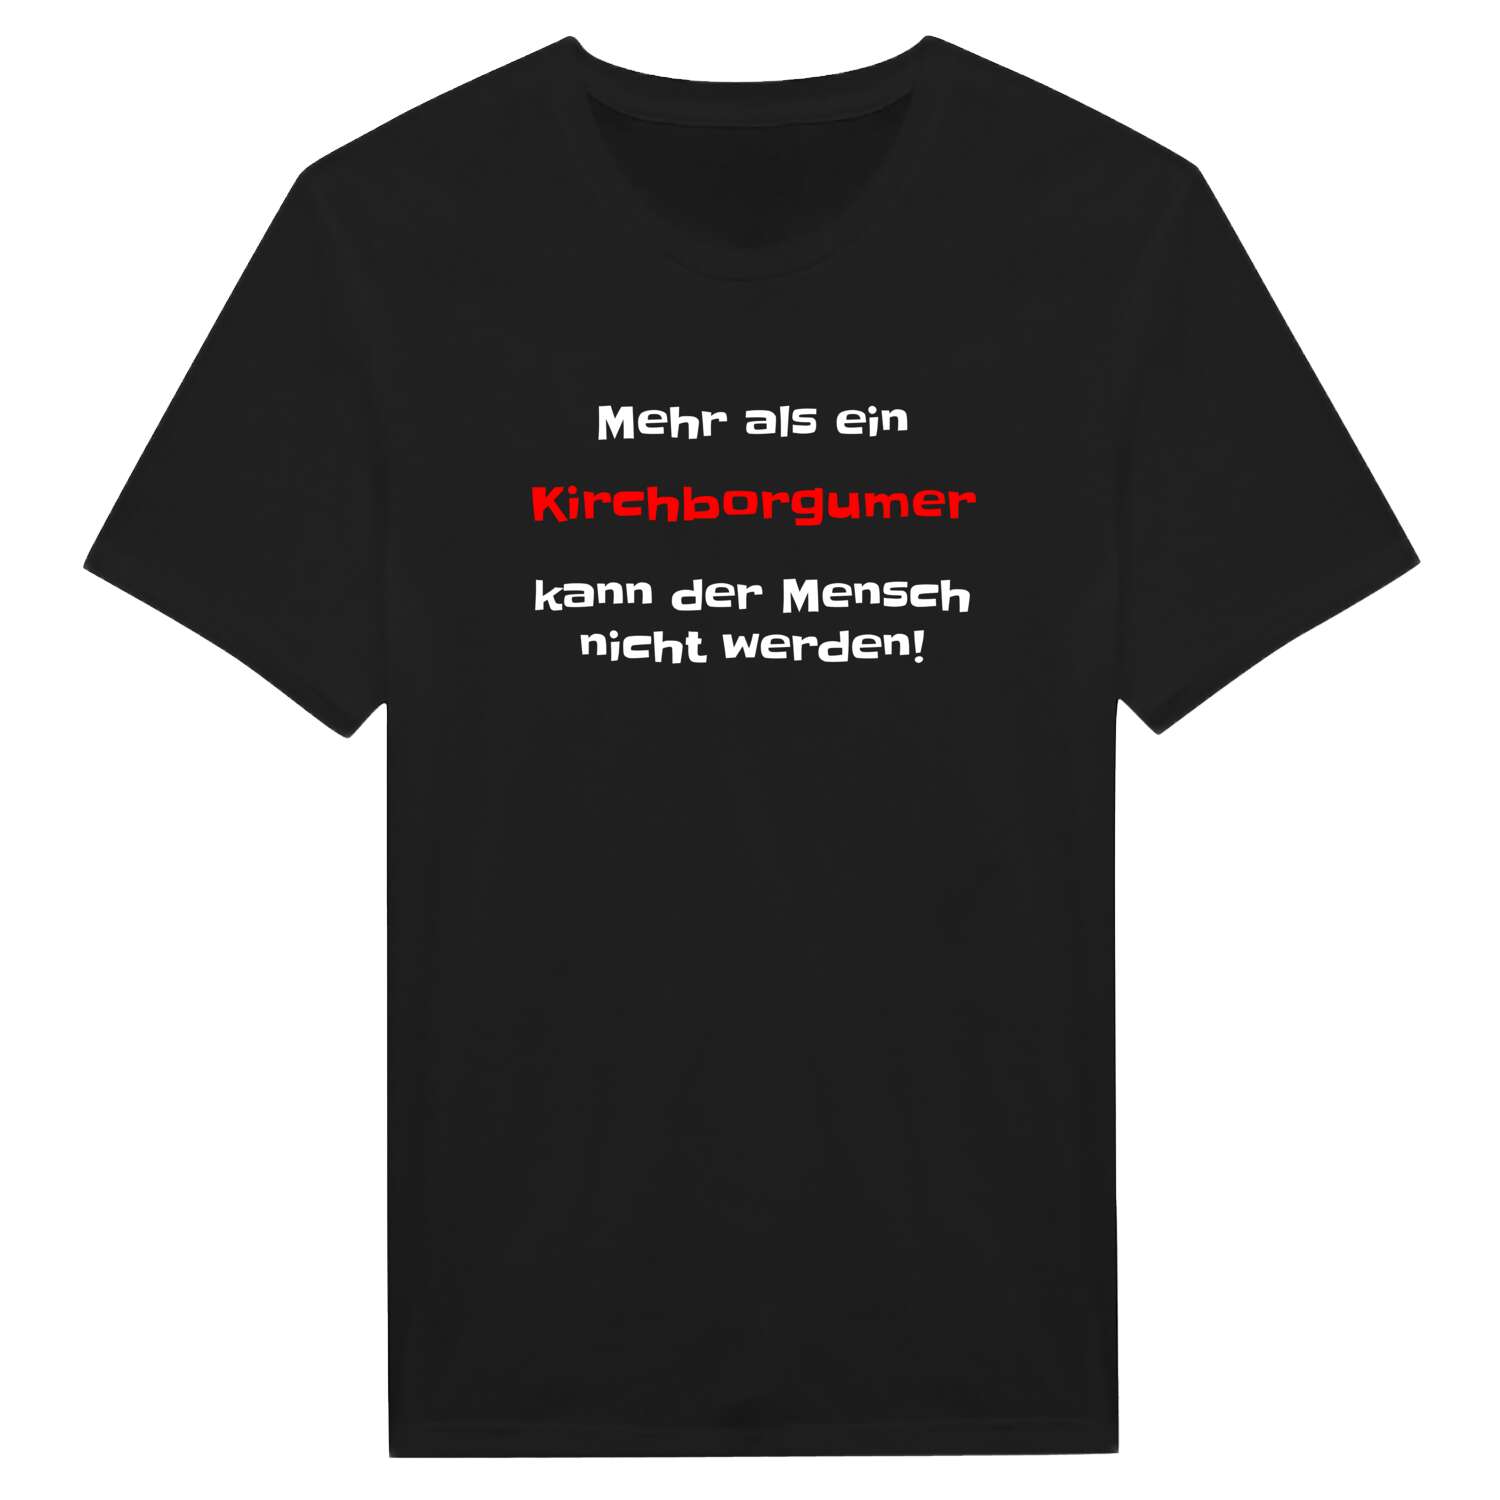 Kirchborgum T-Shirt »Mehr als ein«